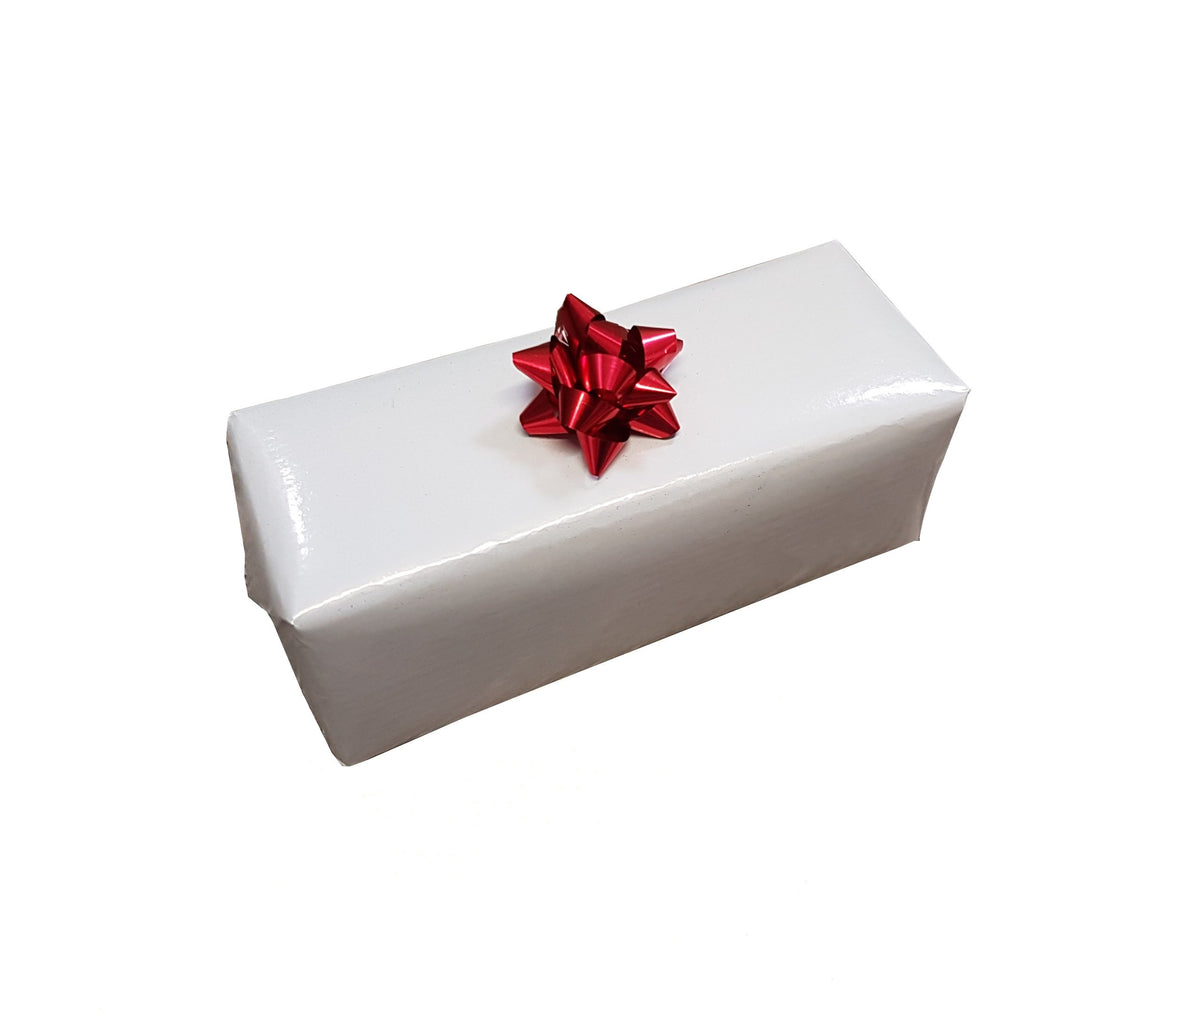 Plain white wrapping paper-Xmas Trade Gift Wrap-Opaque White Gift Wrap